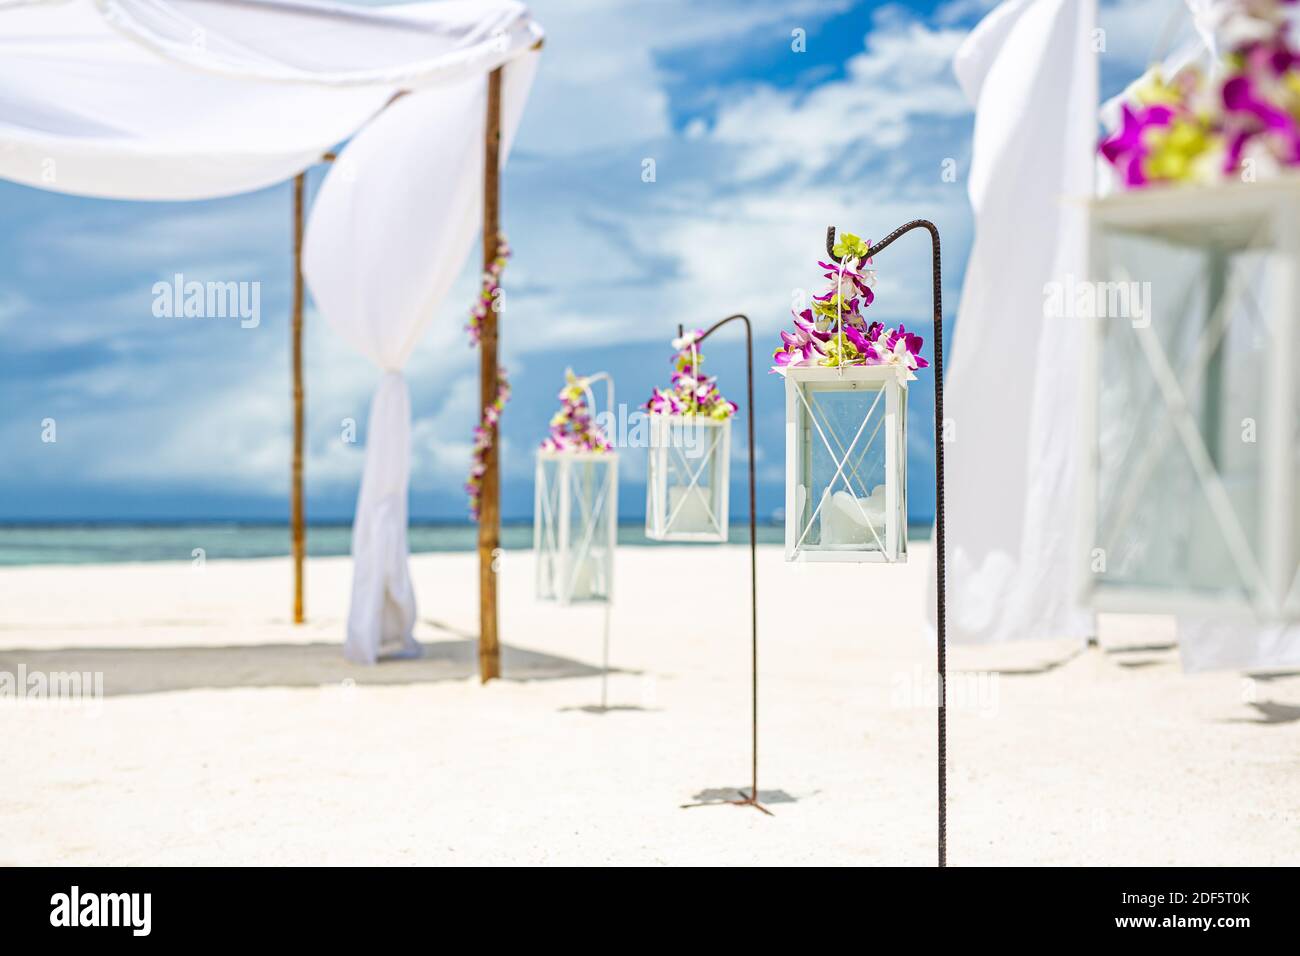 Cérémonie romantique de mariage sur la plage, décoration romantique à  fleurs et blanches. Mariage de destination, lune de miel ou célébration d' anniversaire, décor de plage Photo Stock - Alamy